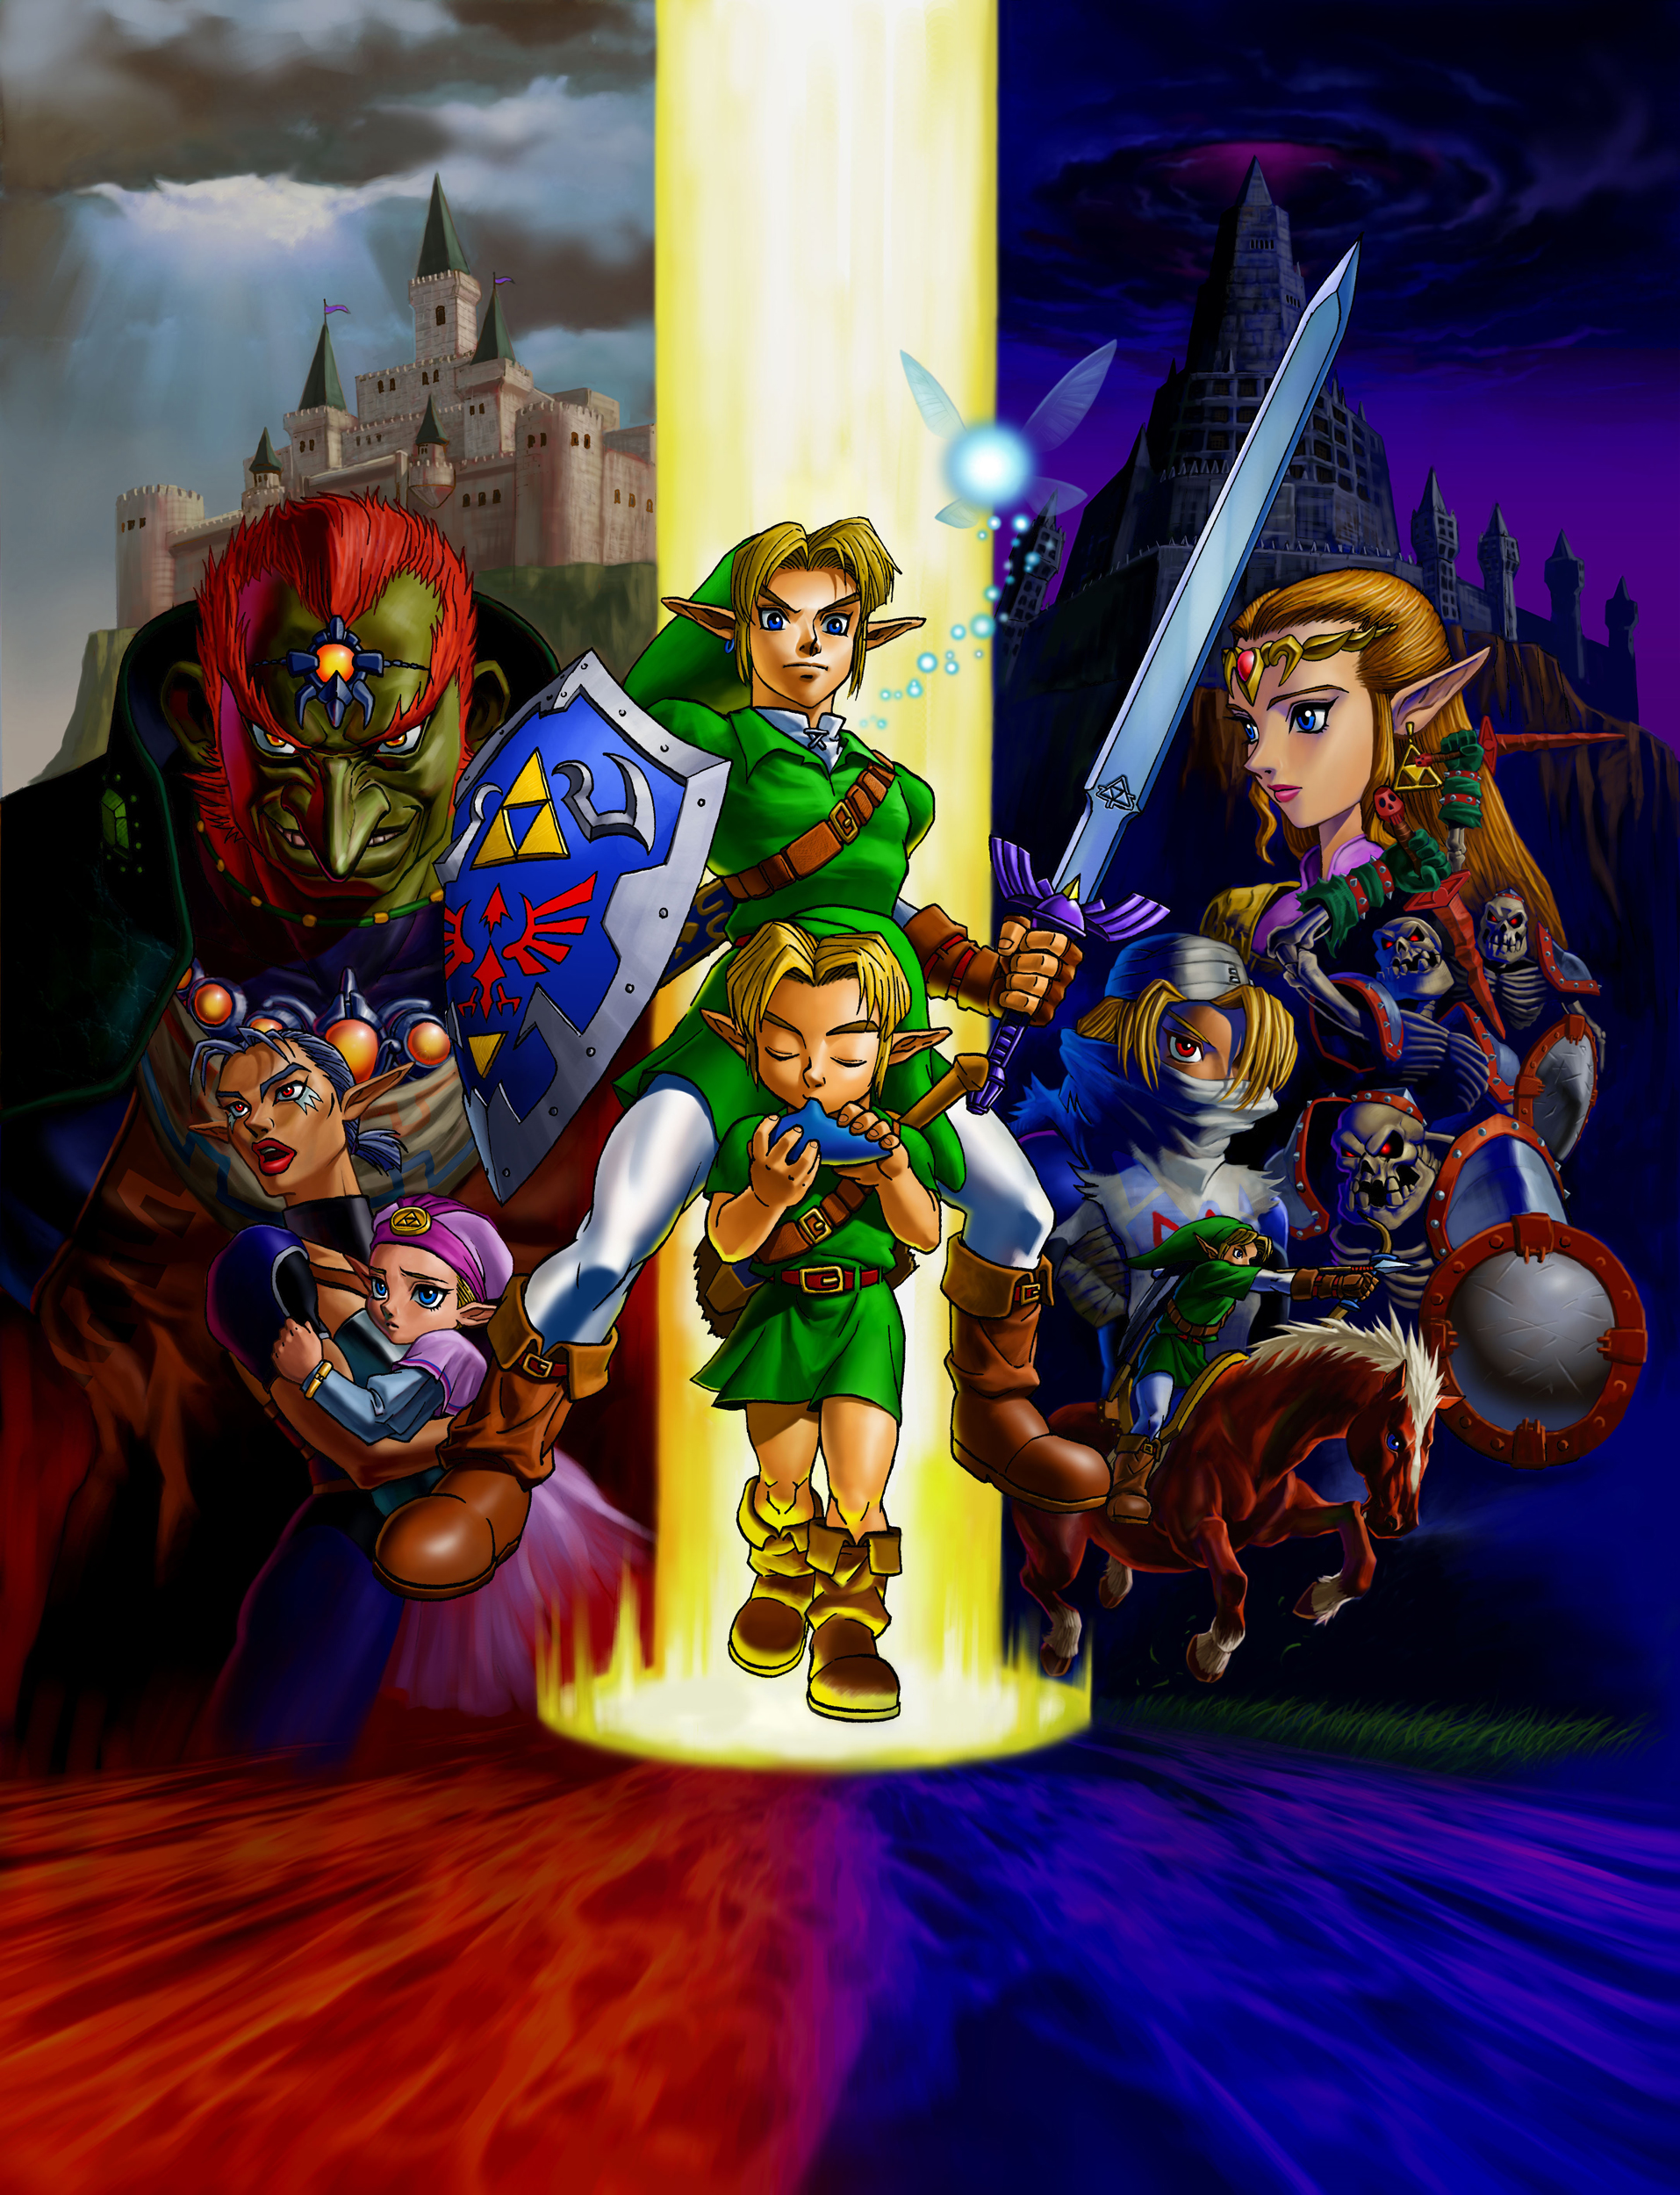 The Legend of Zelda: Ocarina of Time (Guia oficial de jogo